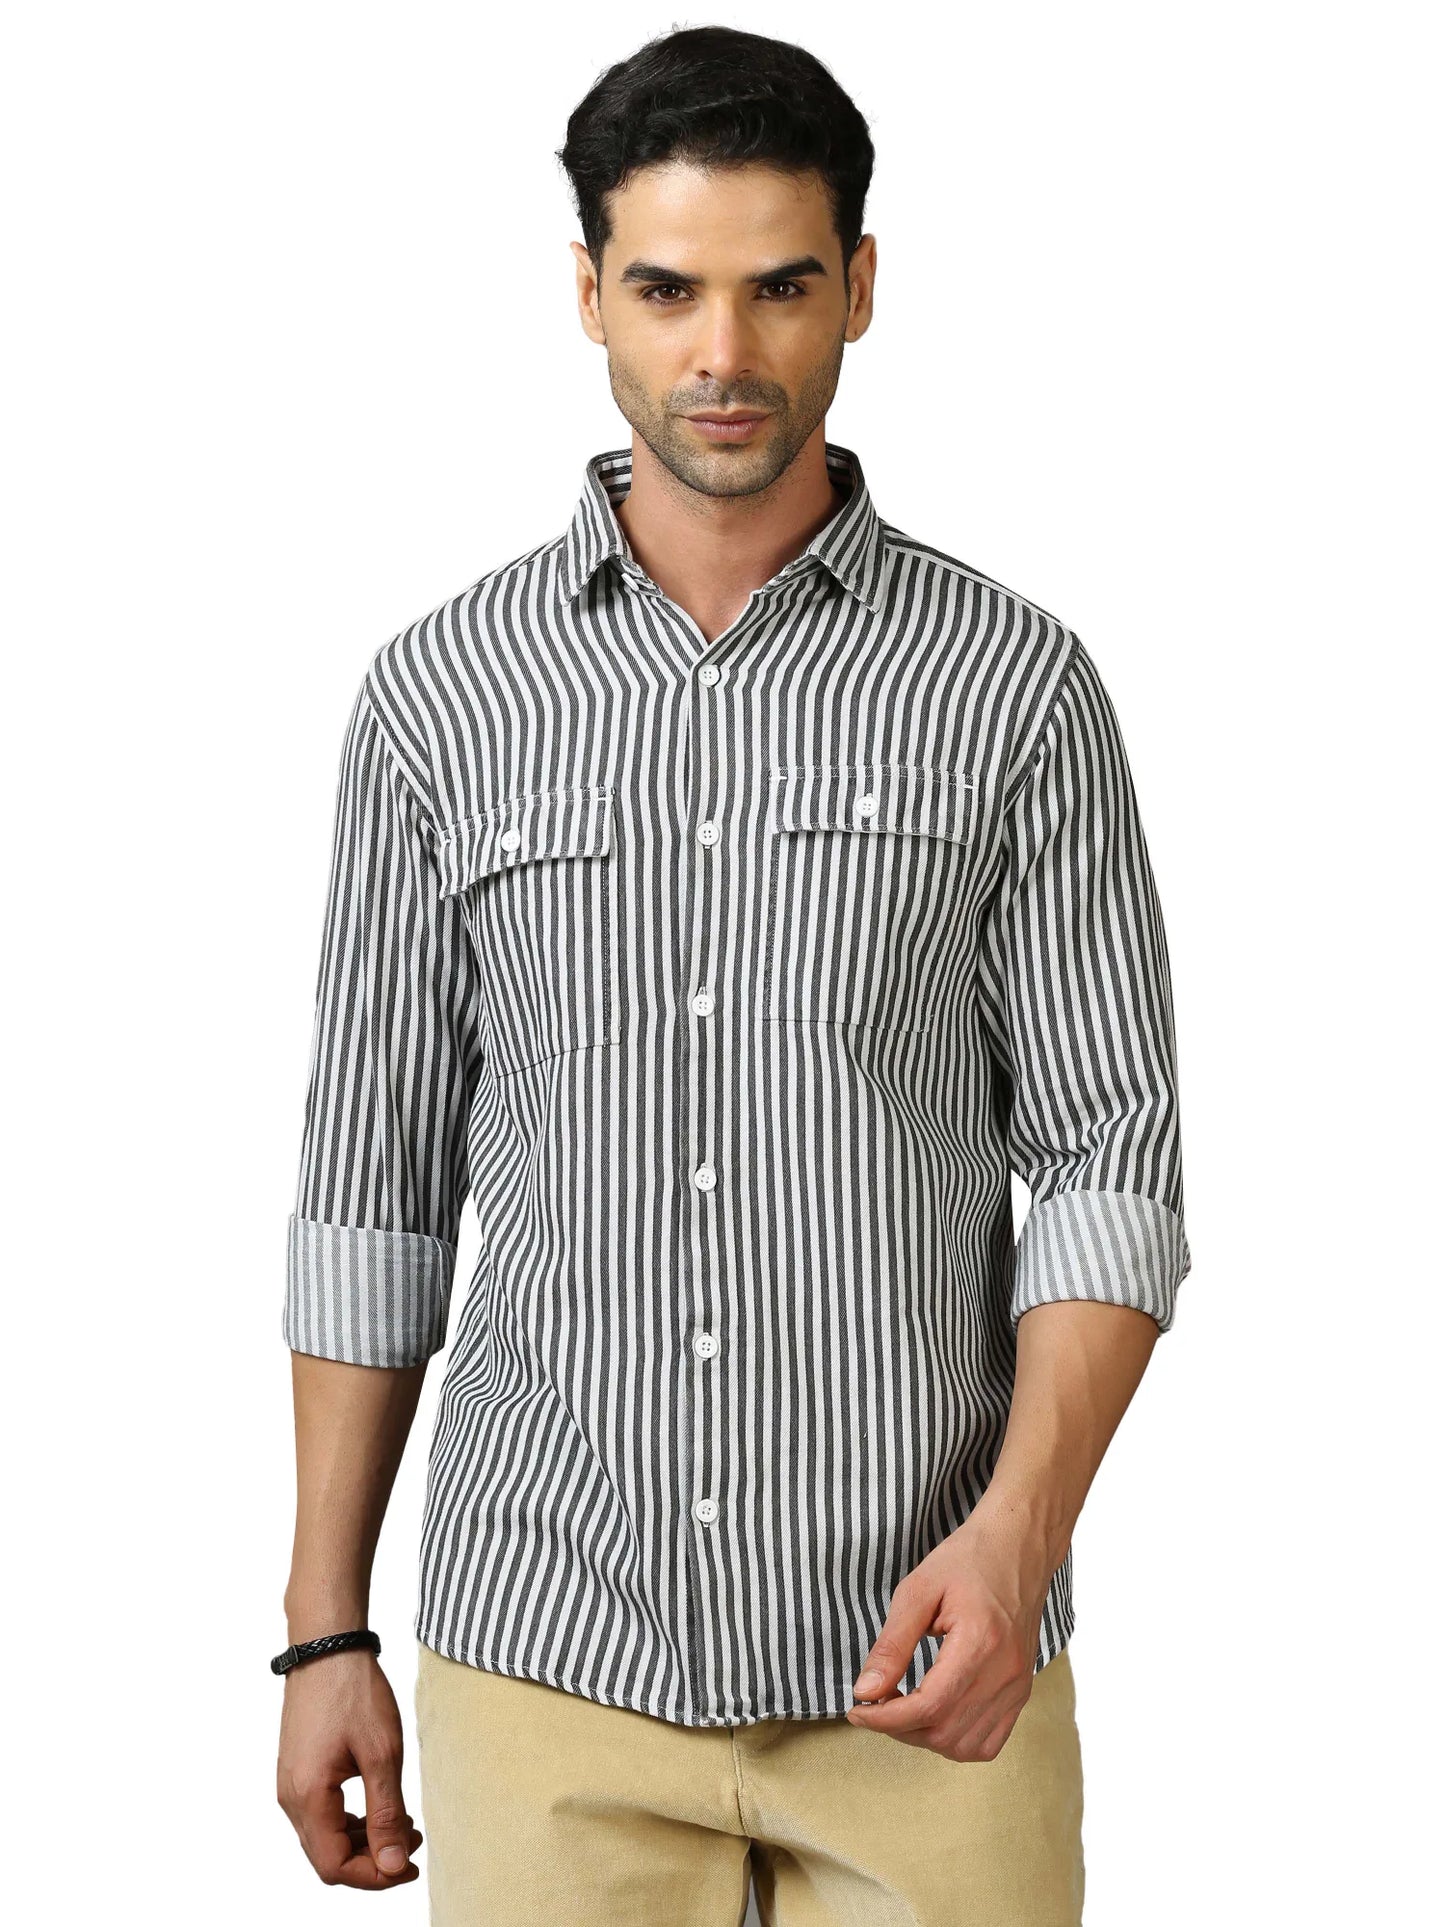 Dark Denim Stripes Shirt for Men